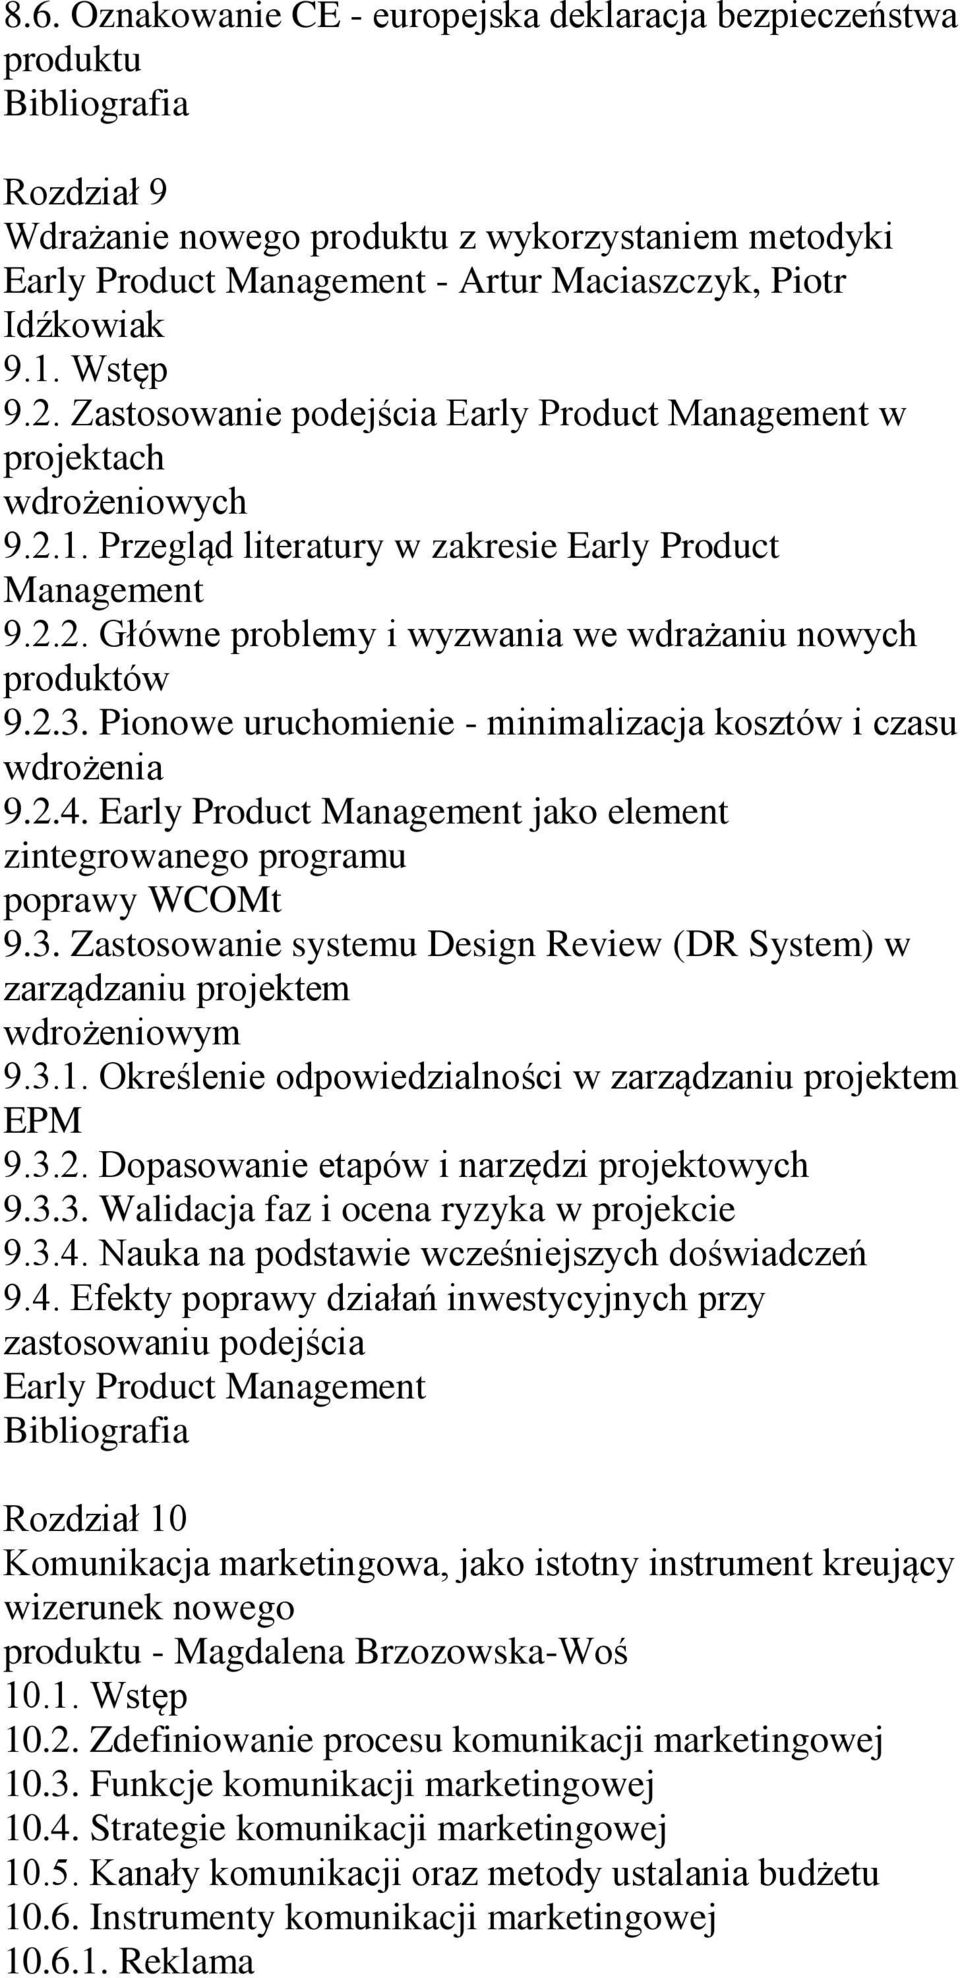 2.3. Pionowe uruchomienie - minimalizacja kosztów i czasu wdrożenia 9.2.4. Early Product Management jako element zintegrowanego programu poprawy WCOMt 9.3. Zastosowanie systemu Design Review (DR System) w zarządzaniu projektem wdrożeniowym 9.